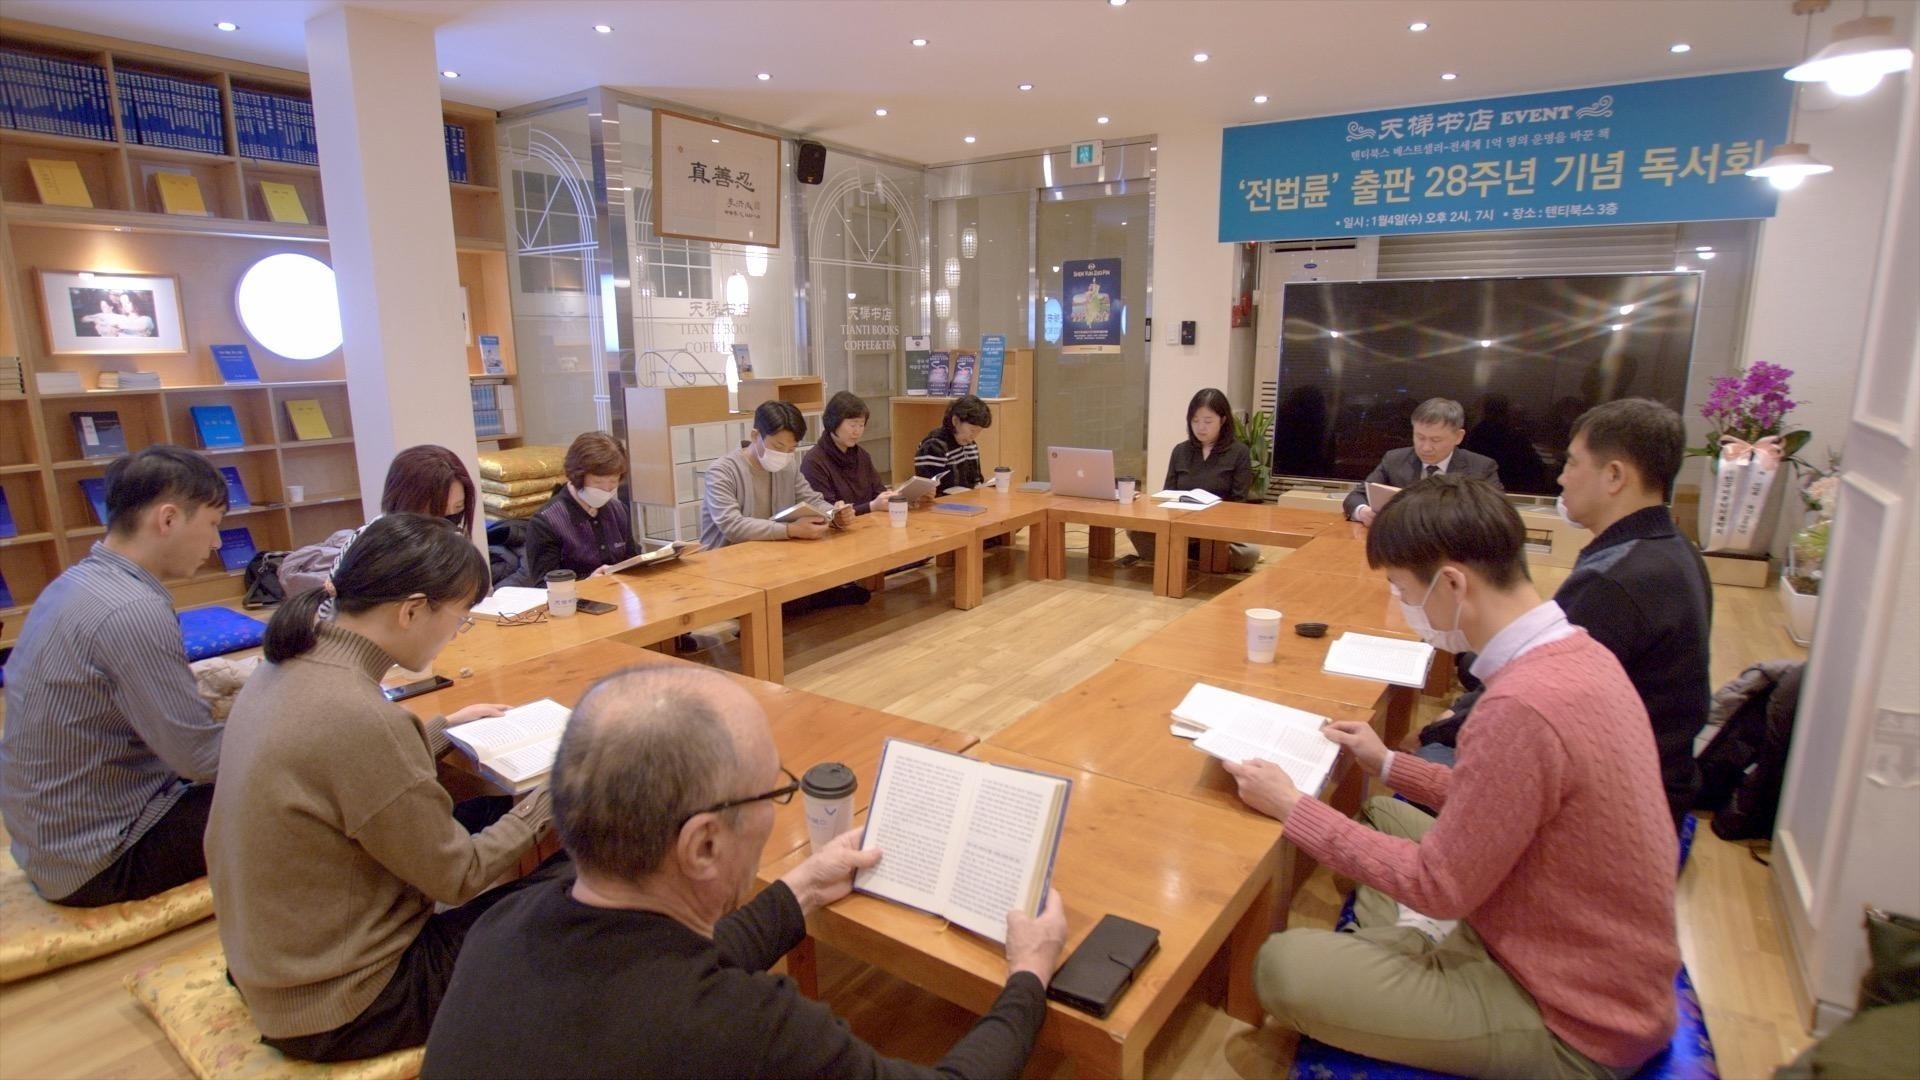 图1：二零二三年一月四日，韩国首尔龙山区的天梯书店举办纪念《转法轮》出版二十八周年读书会。会者一起阅读《转法轮》。